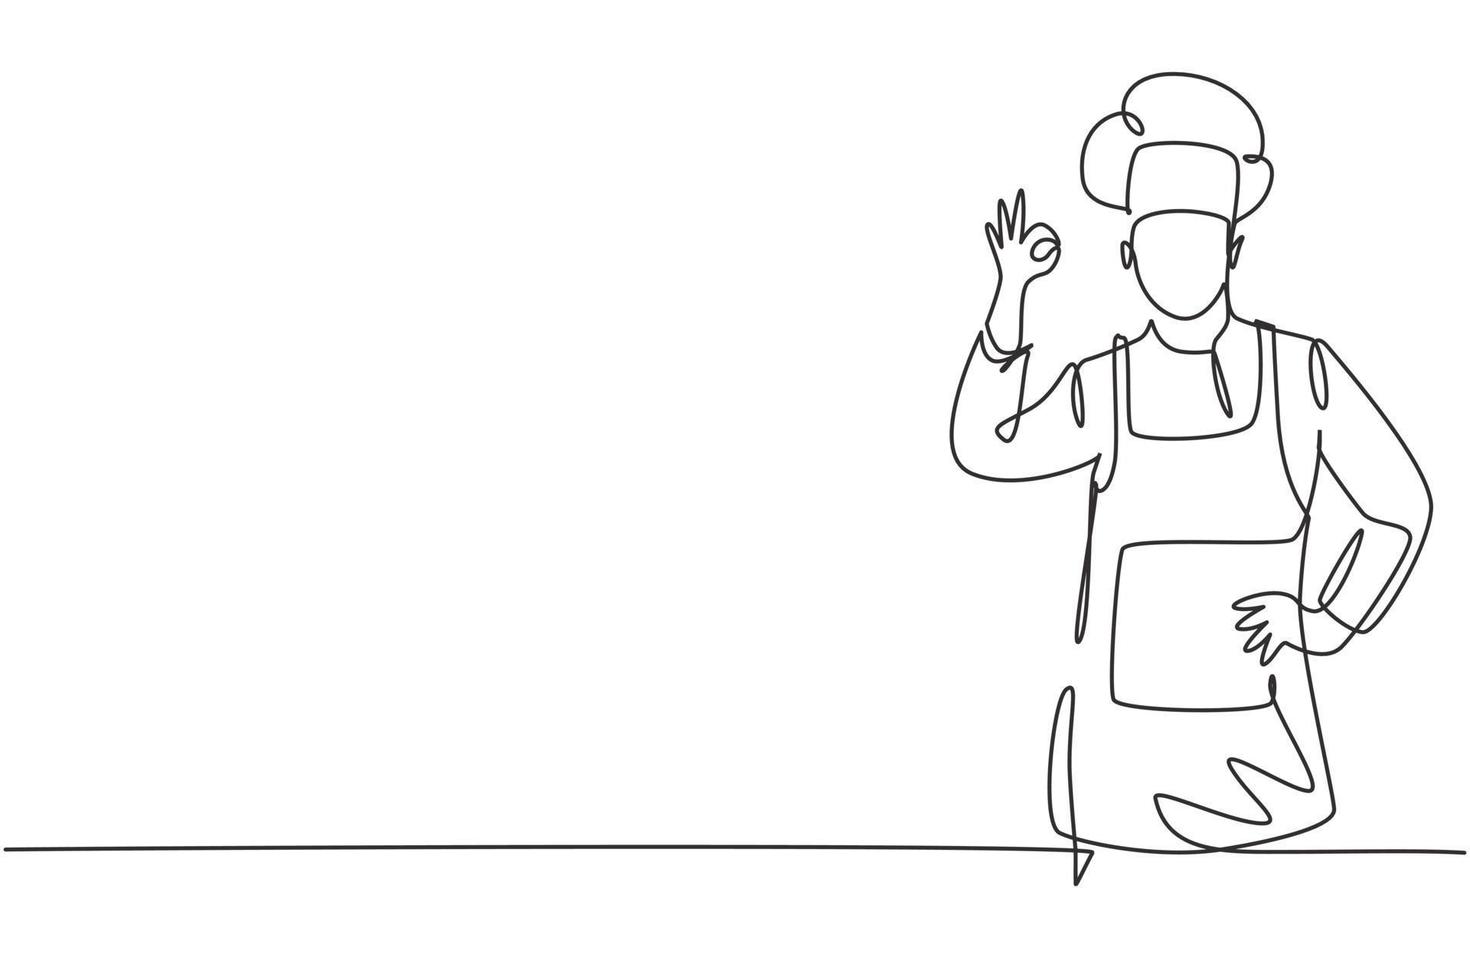 desenho único de uma linha do chef com gestos ok e usando uniformes de cozinha está pronto para preparar refeições para os hóspedes em restaurantes famosos. linha contínua moderna desenhar design gráfico ilustração vetorial vetor